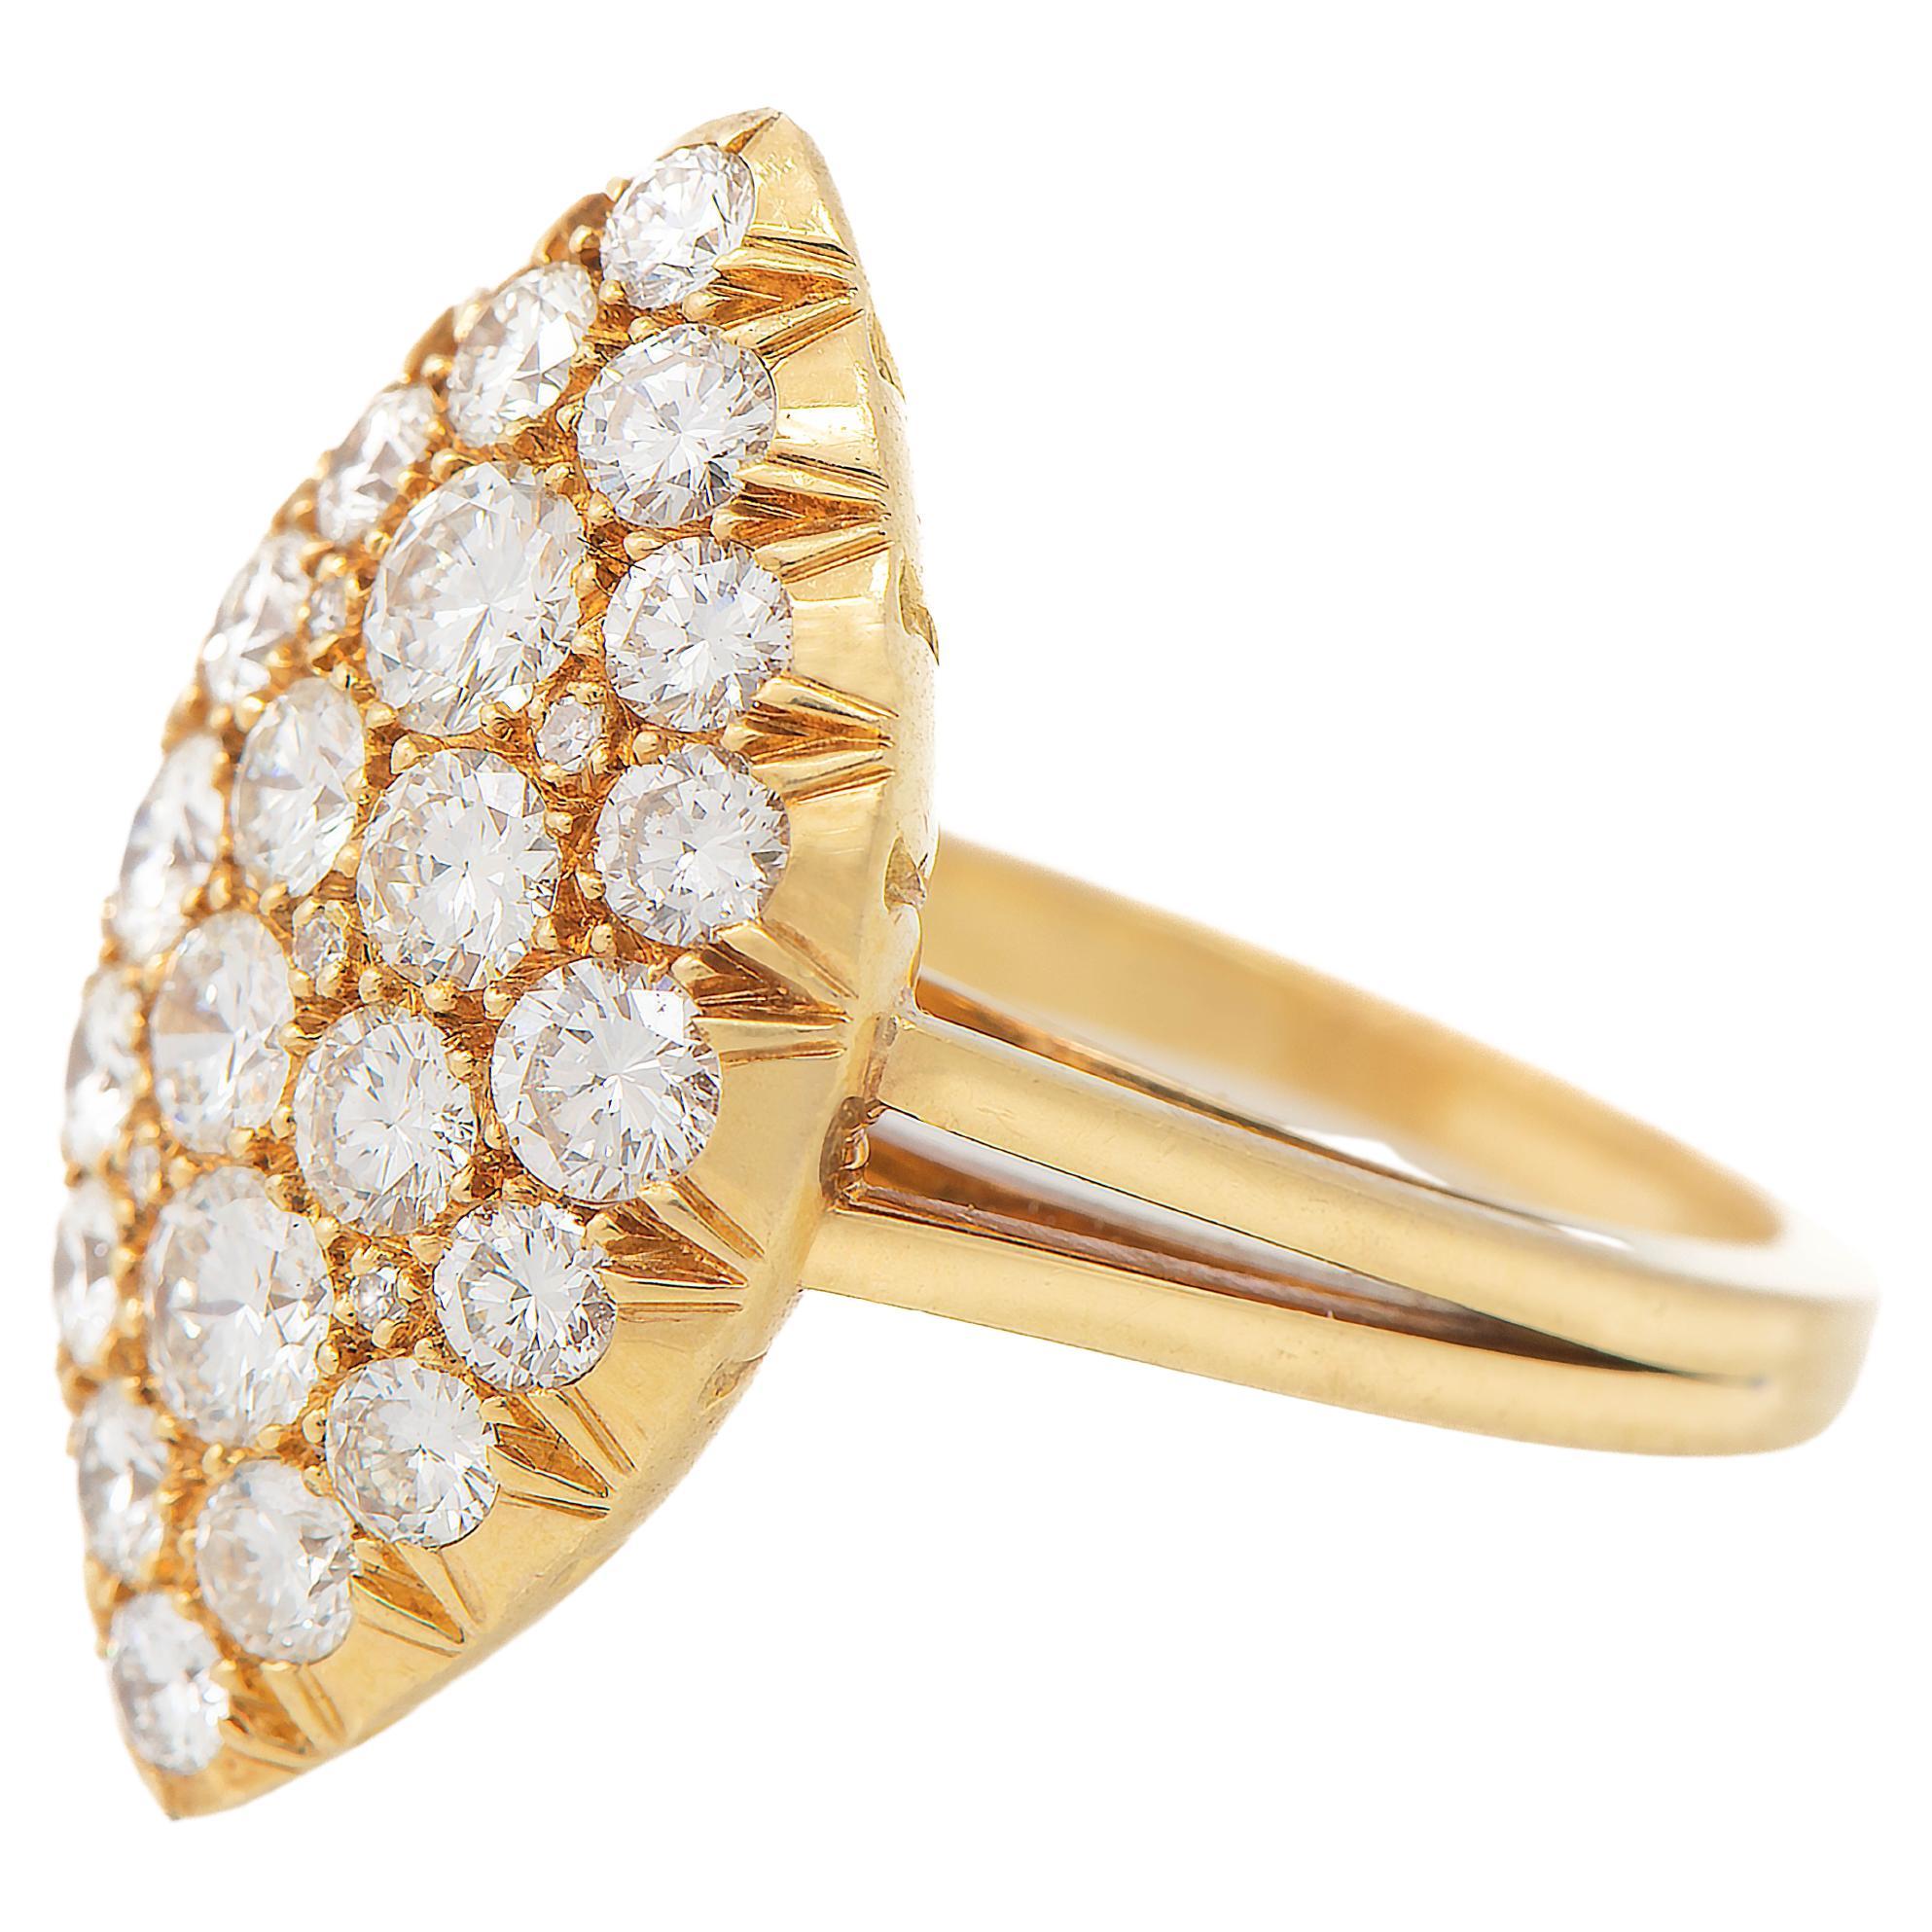 Diamond Navette Ring